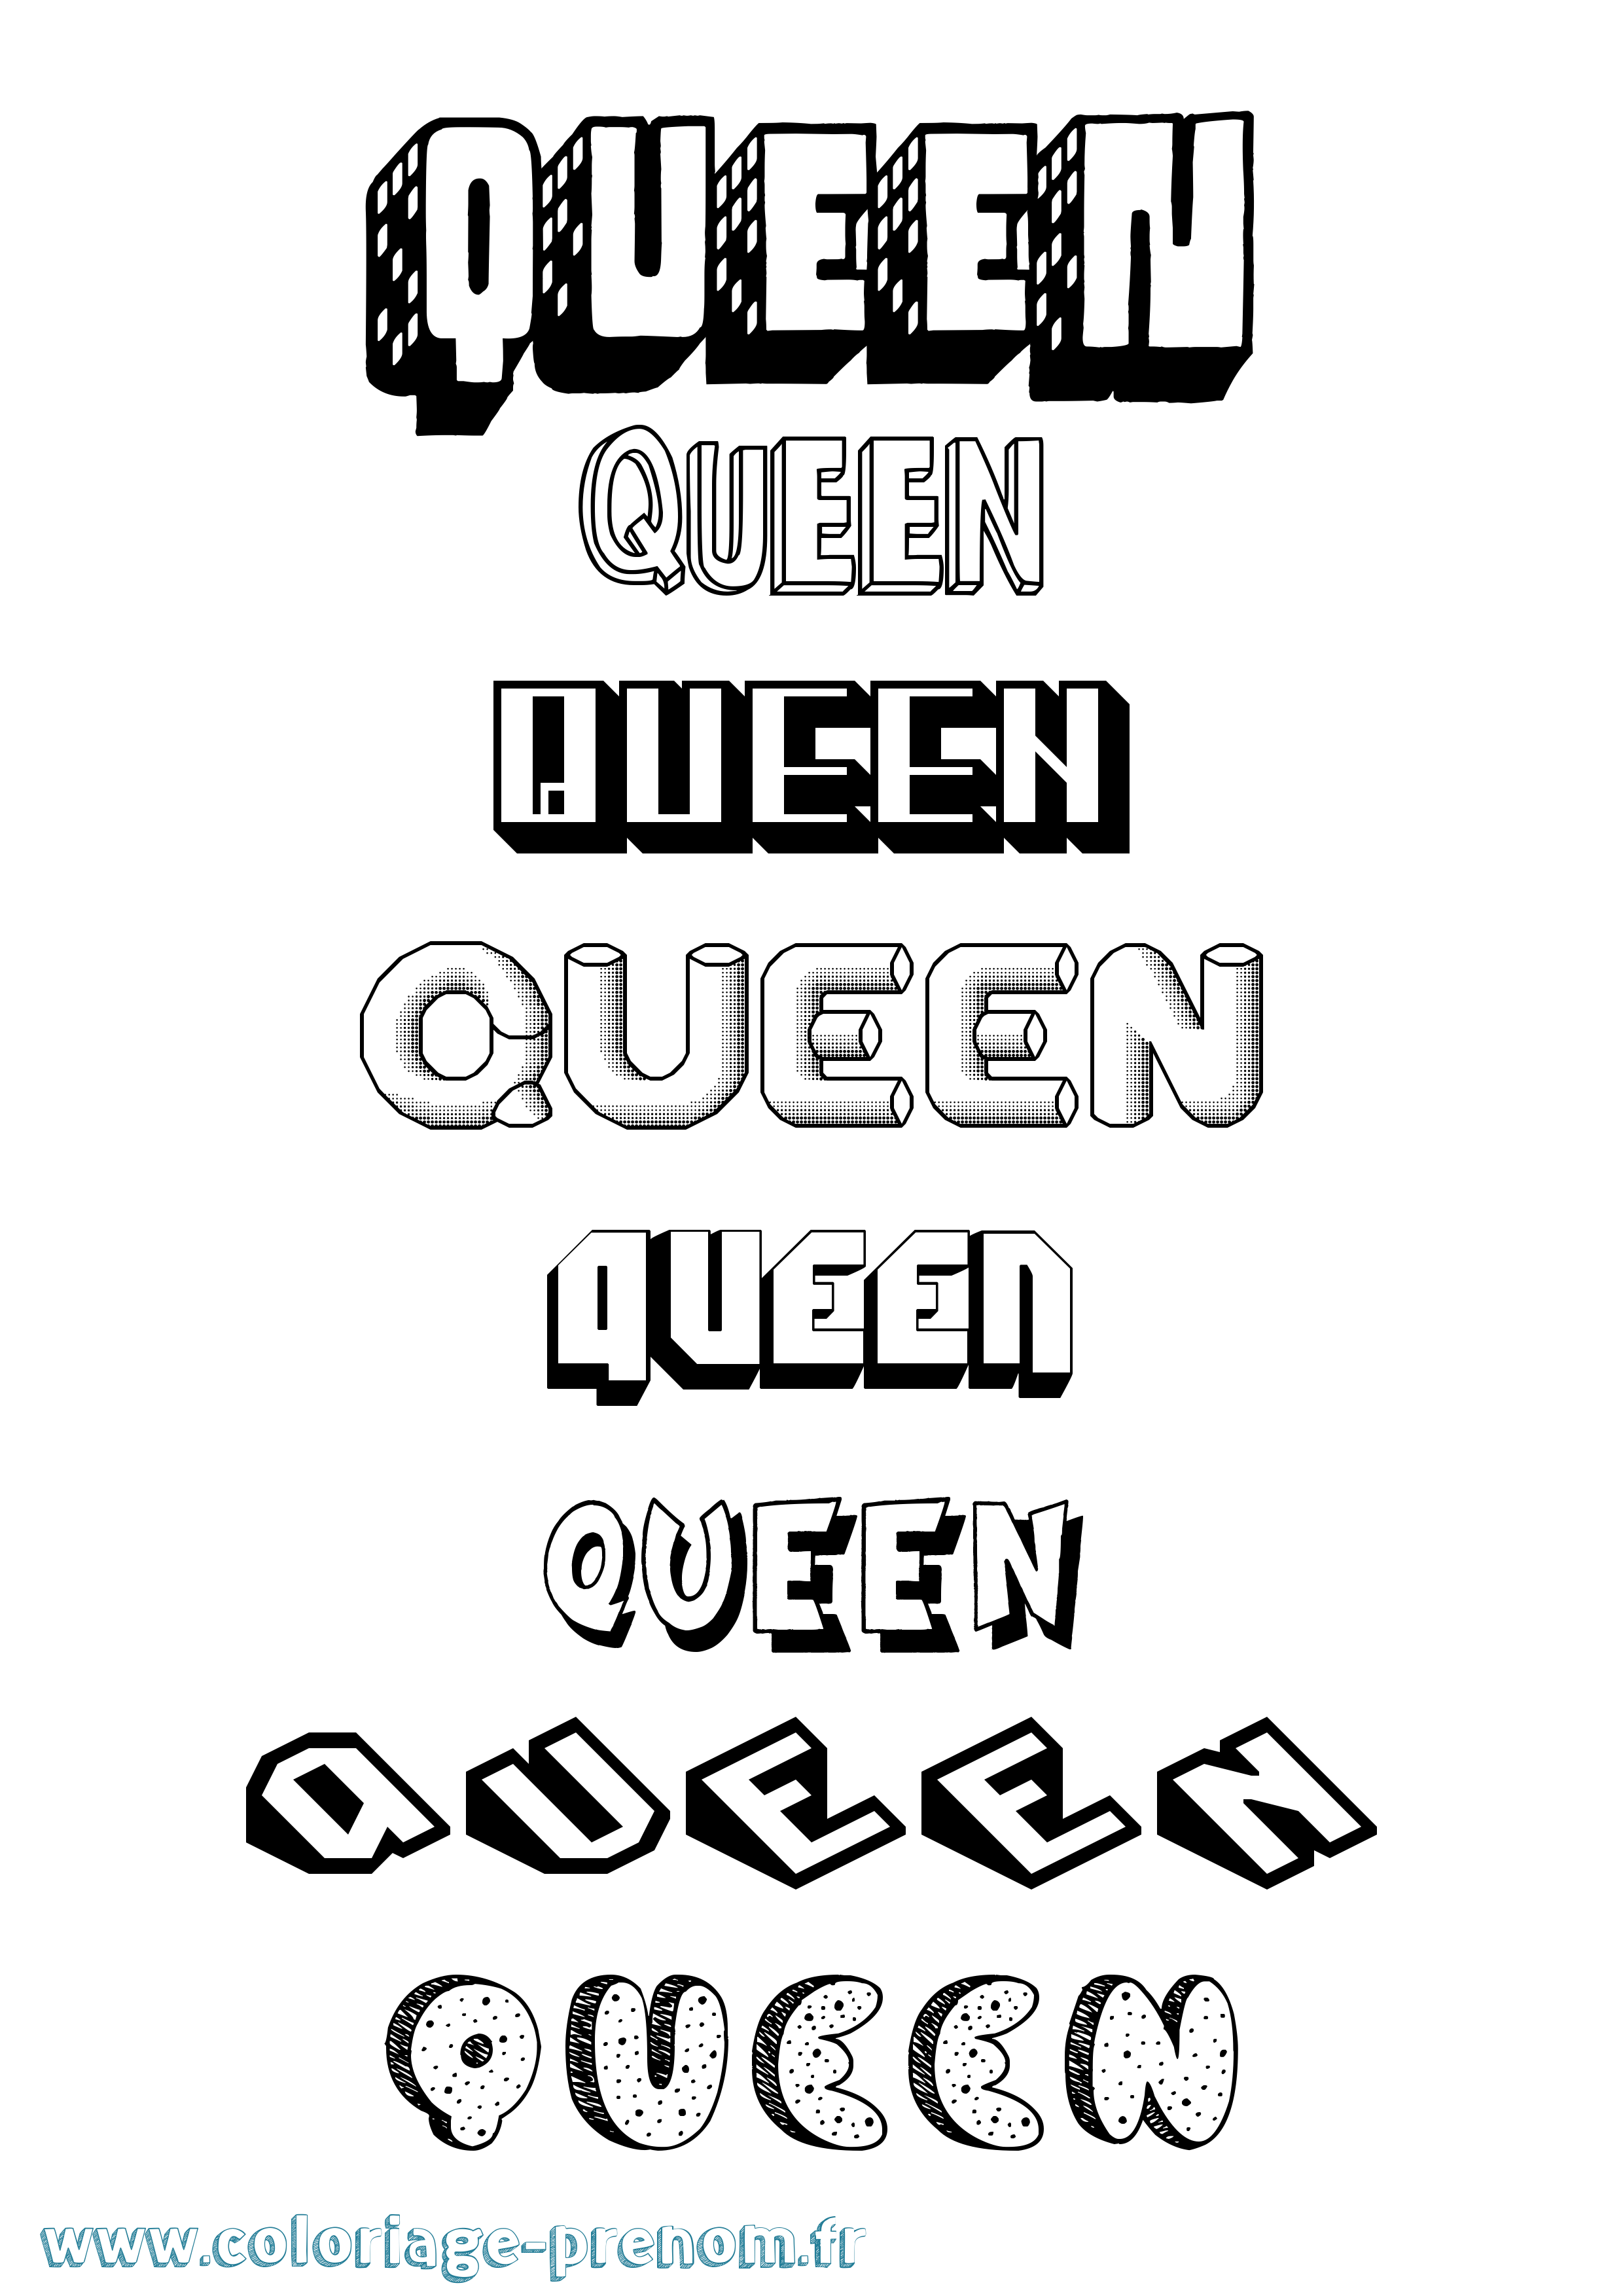 Coloriage prénom Queen Effet 3D